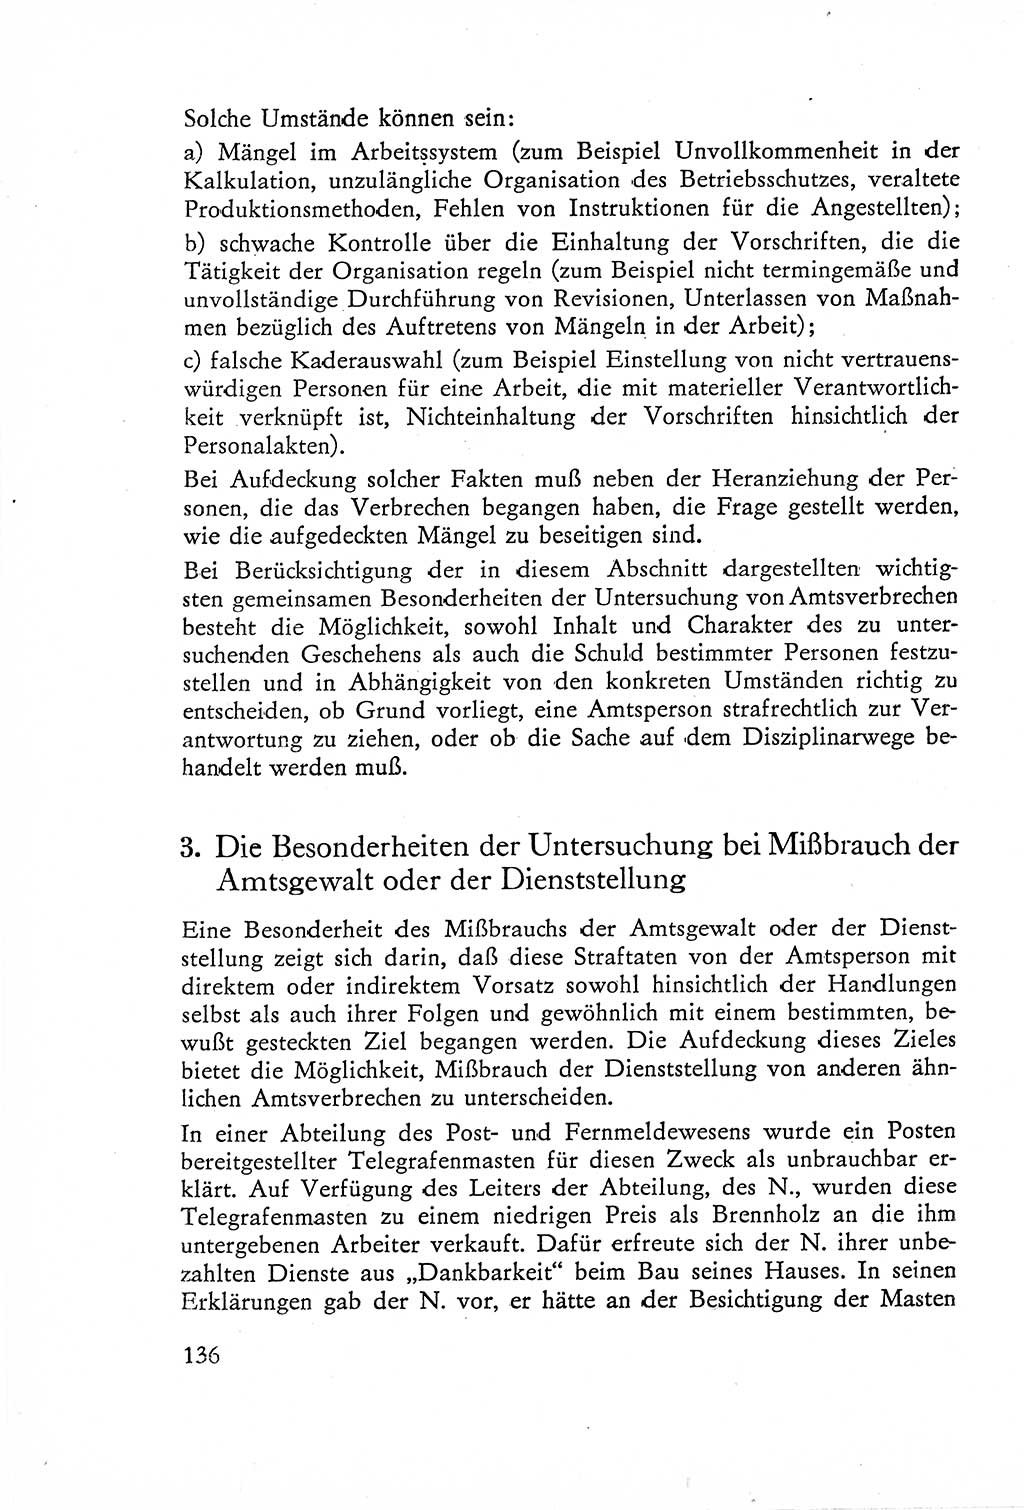 Die Untersuchung einzelner Verbrechensarten [Deutsche Demokratische Republik (DDR)] 1960, Seite 136 (Unters. Verbr.-Art. DDR 1960, S. 136)